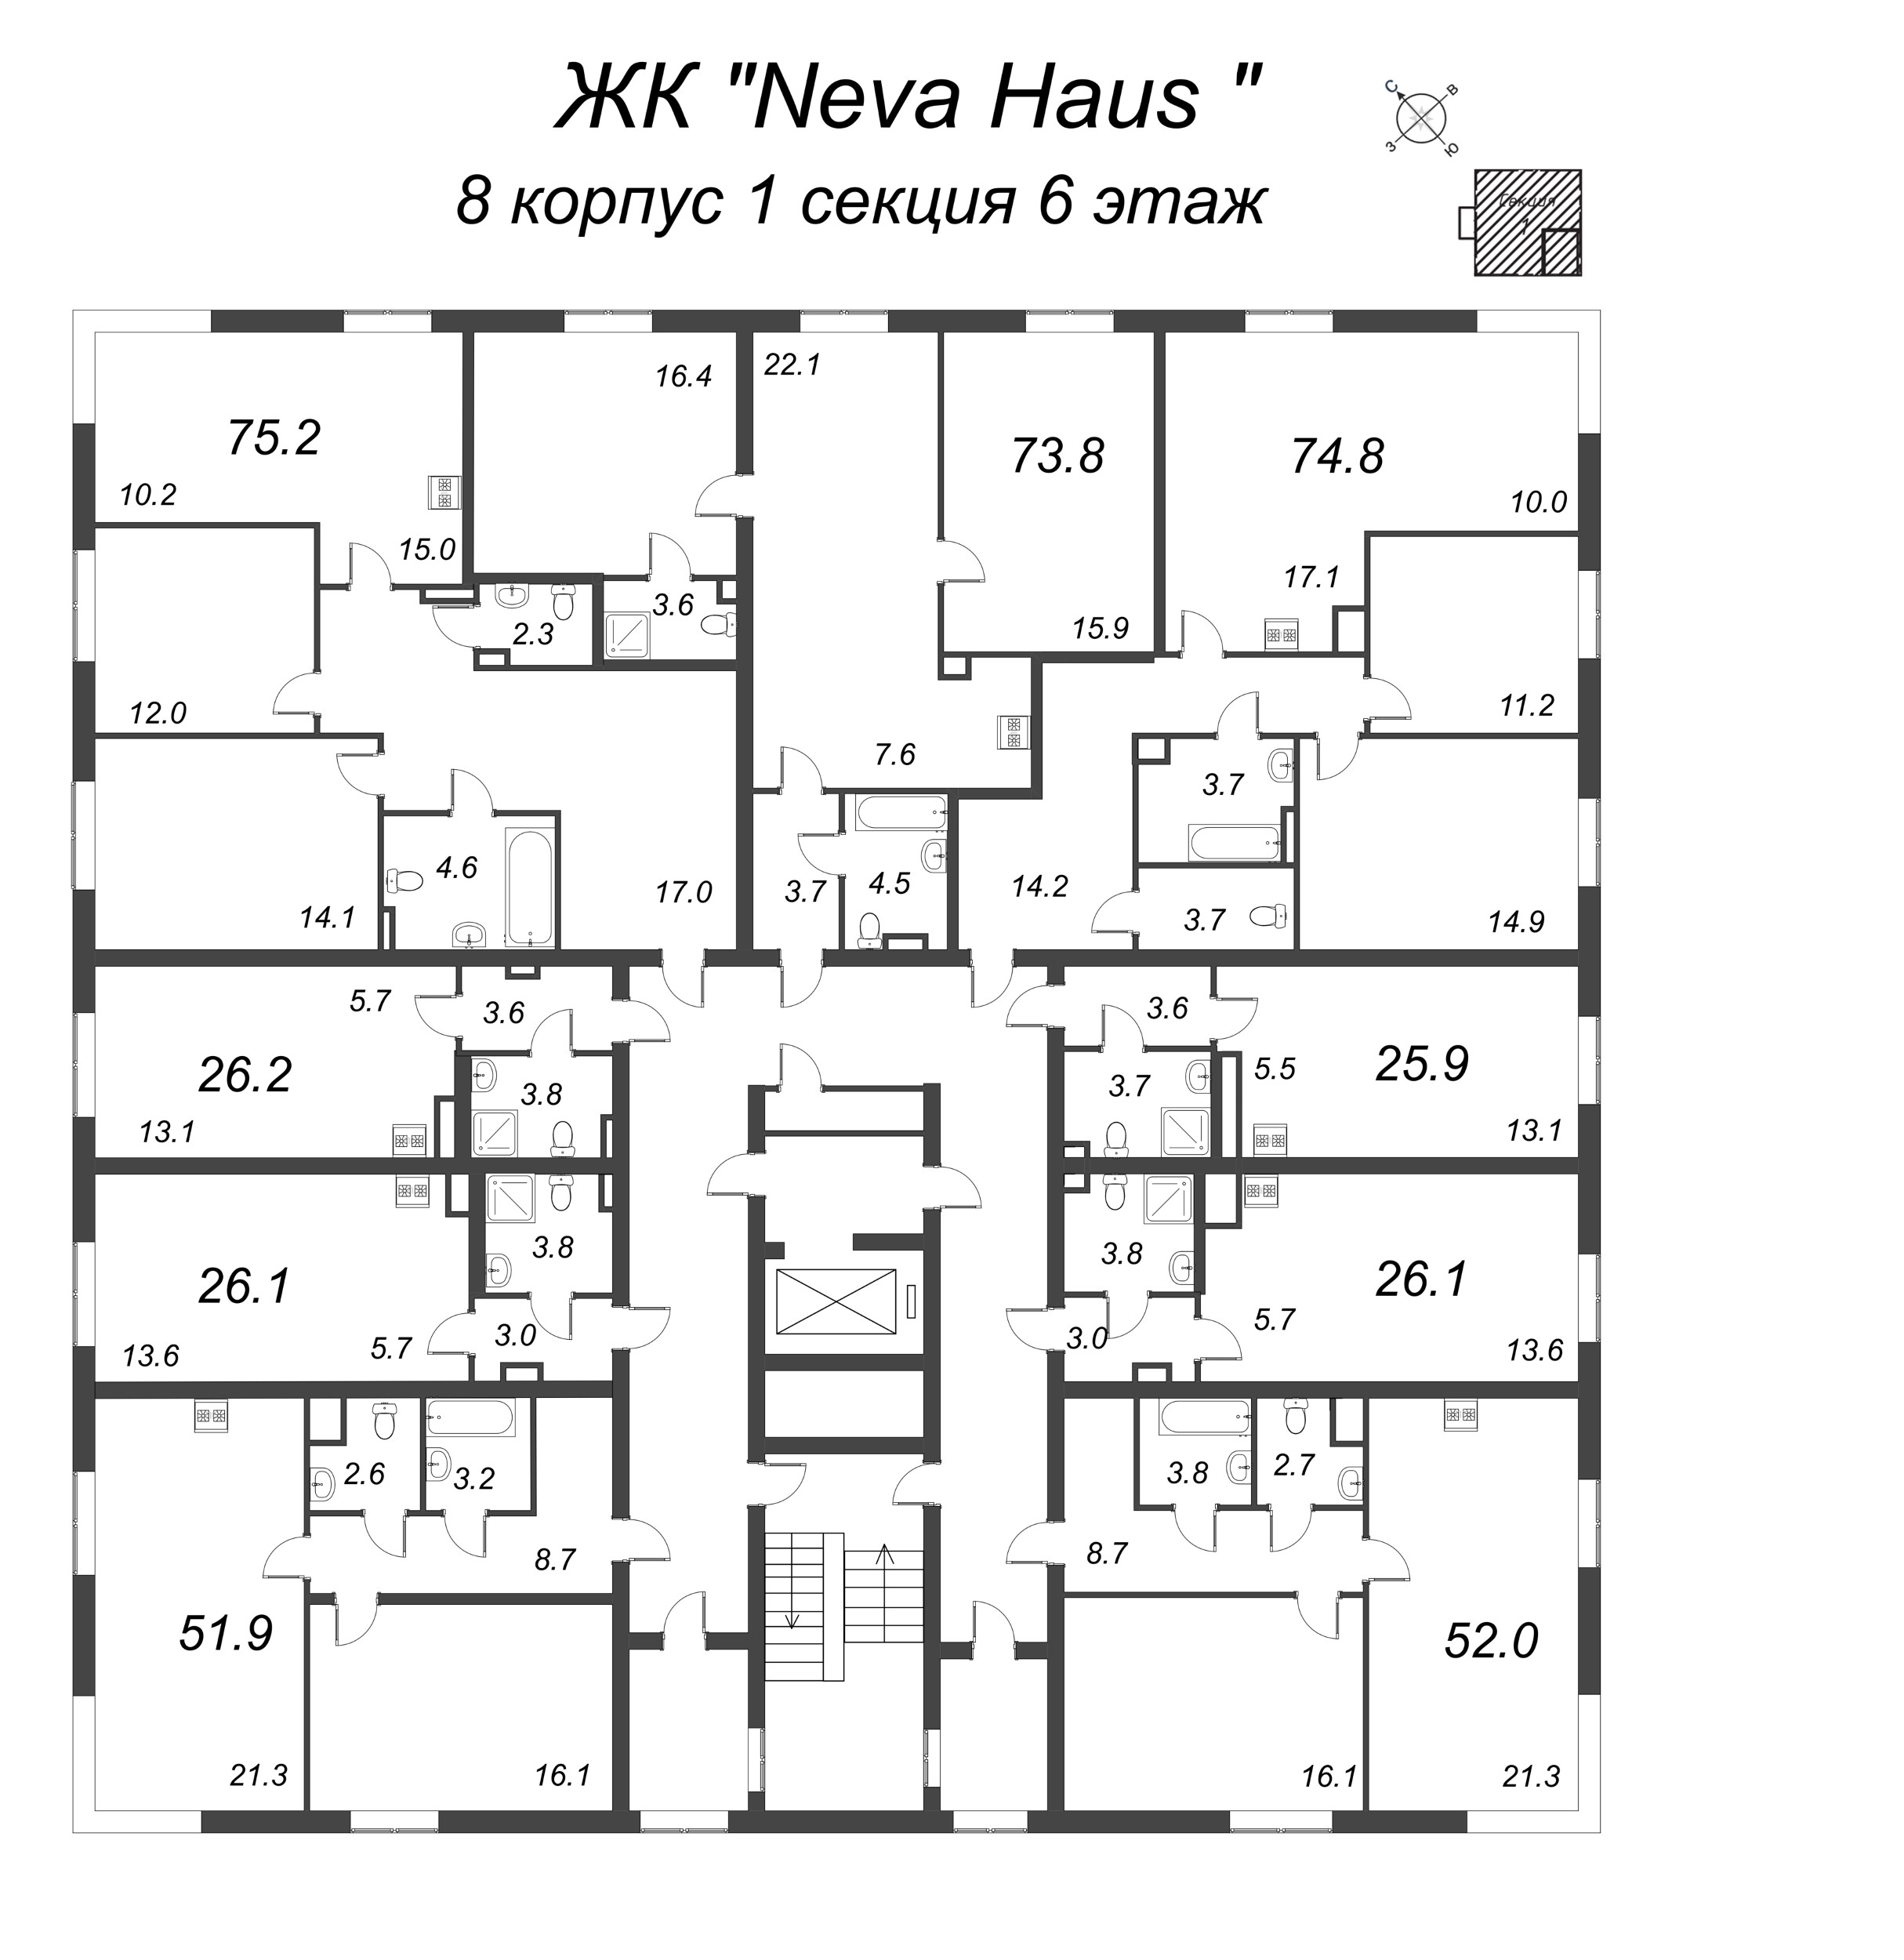 3-комнатная (Евро) квартира, 74.7 м² в ЖК "Neva Haus" - планировка этажа